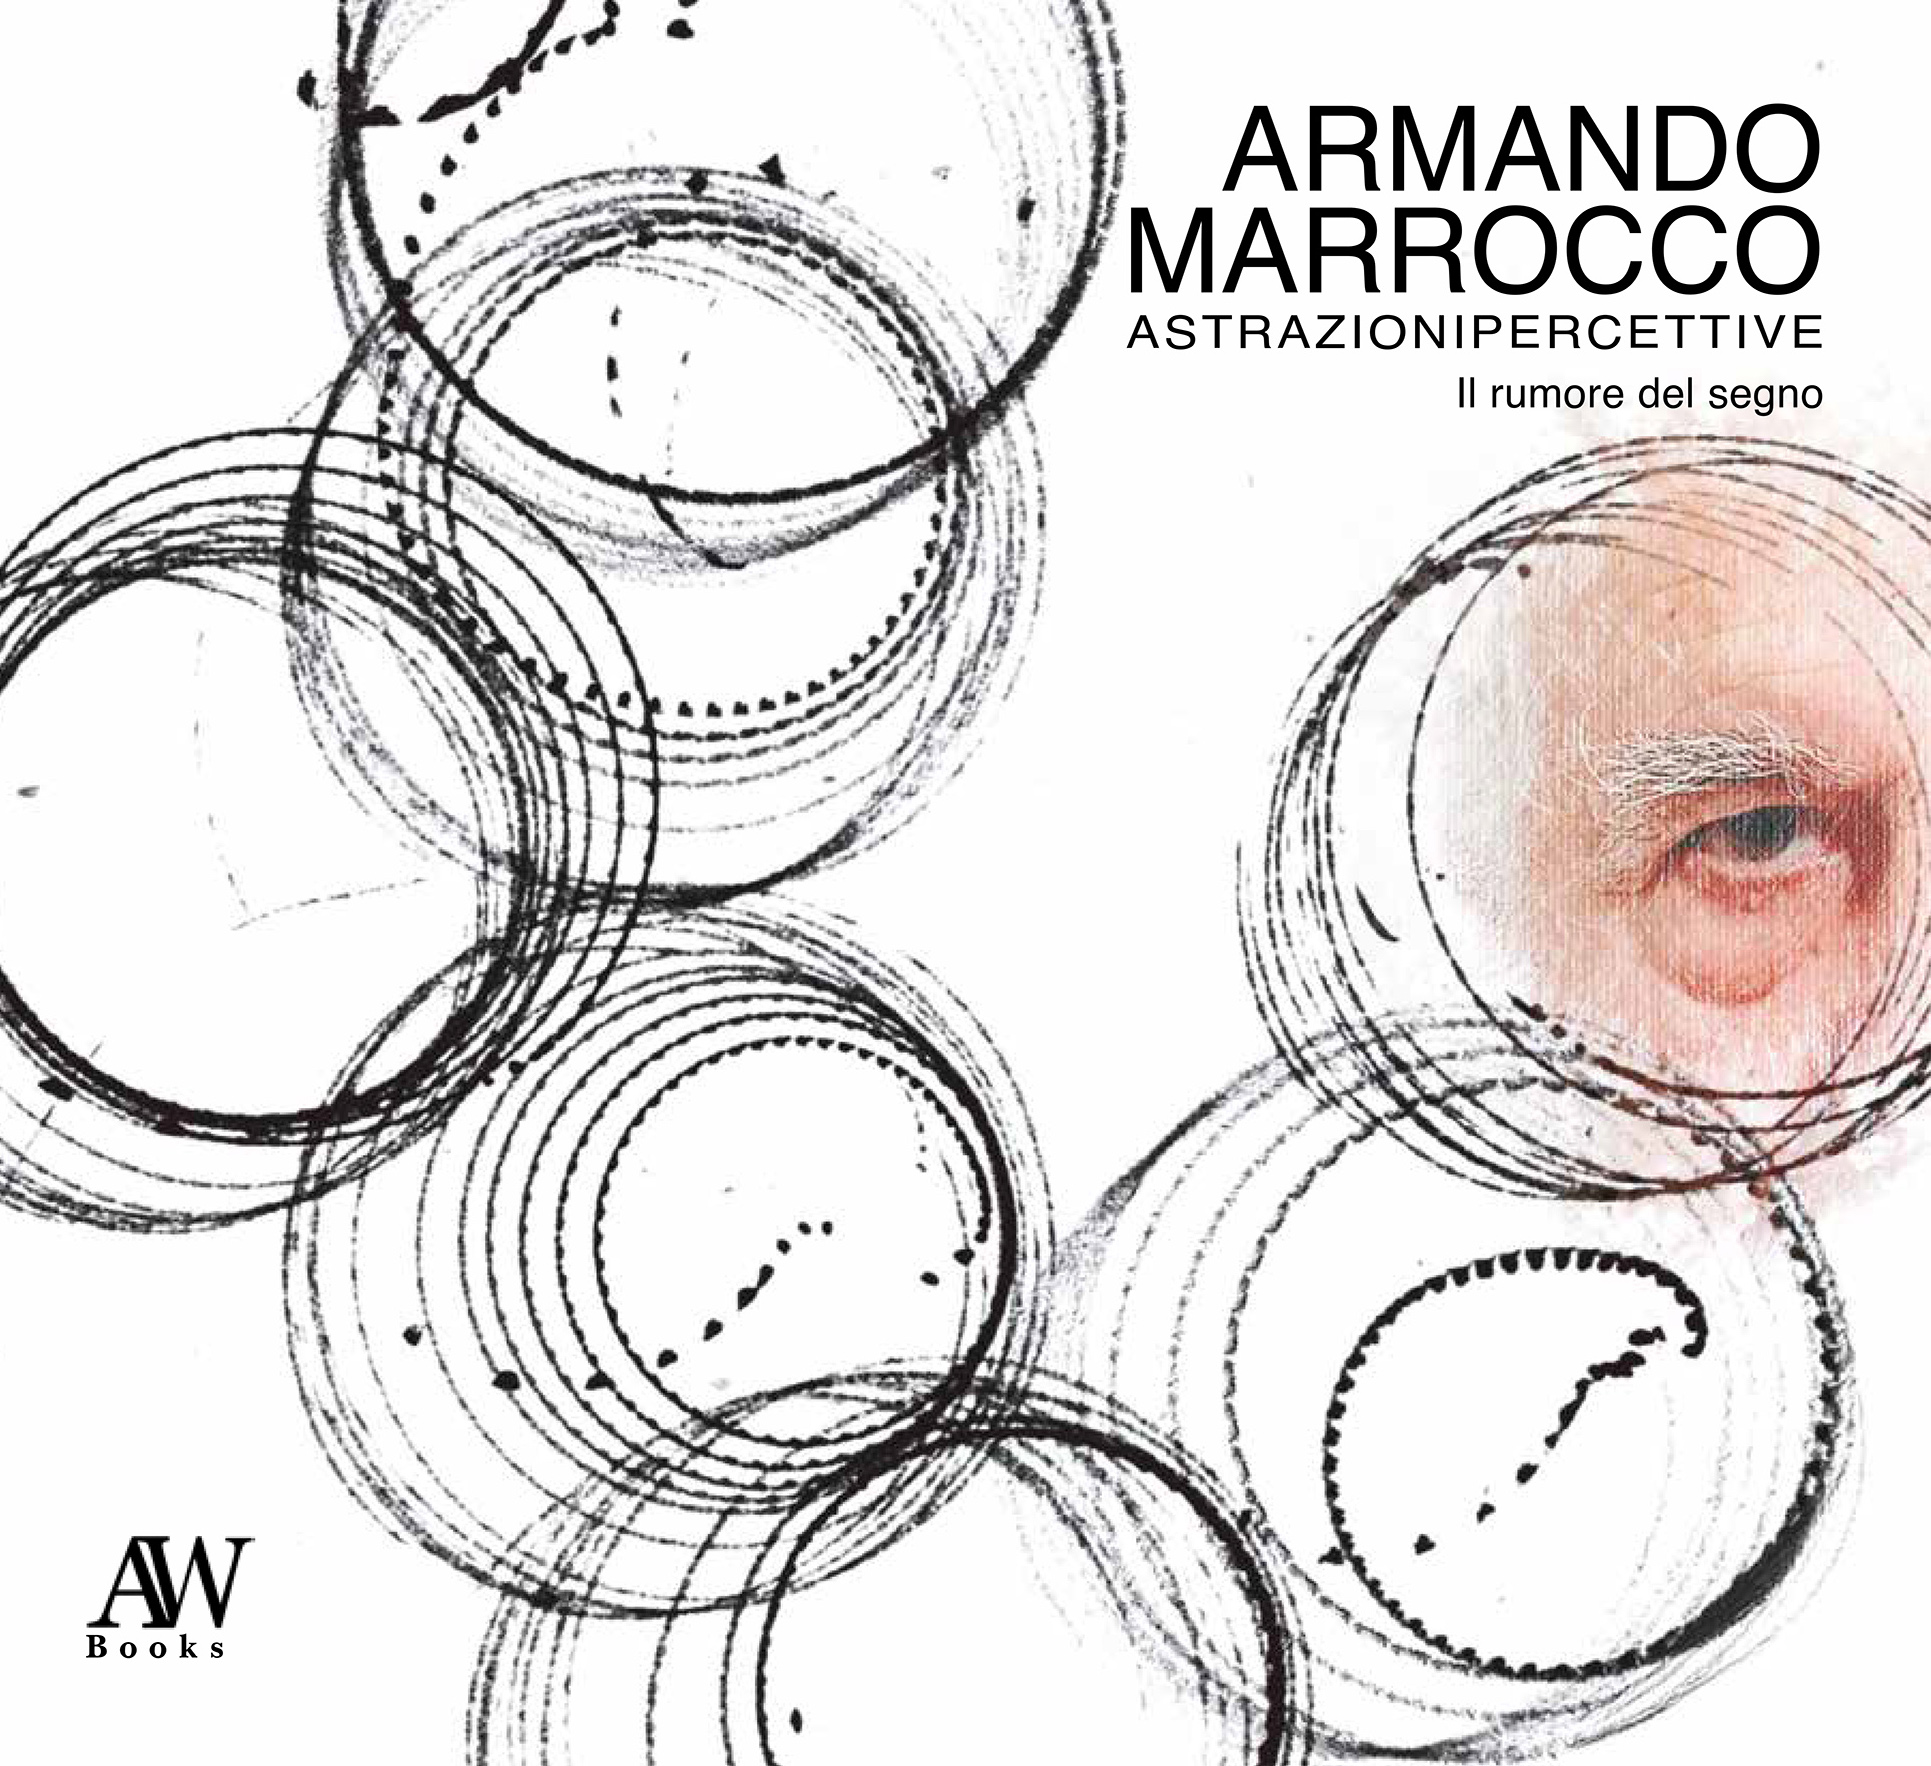 Astrazioni percettive - Armando Marrocco